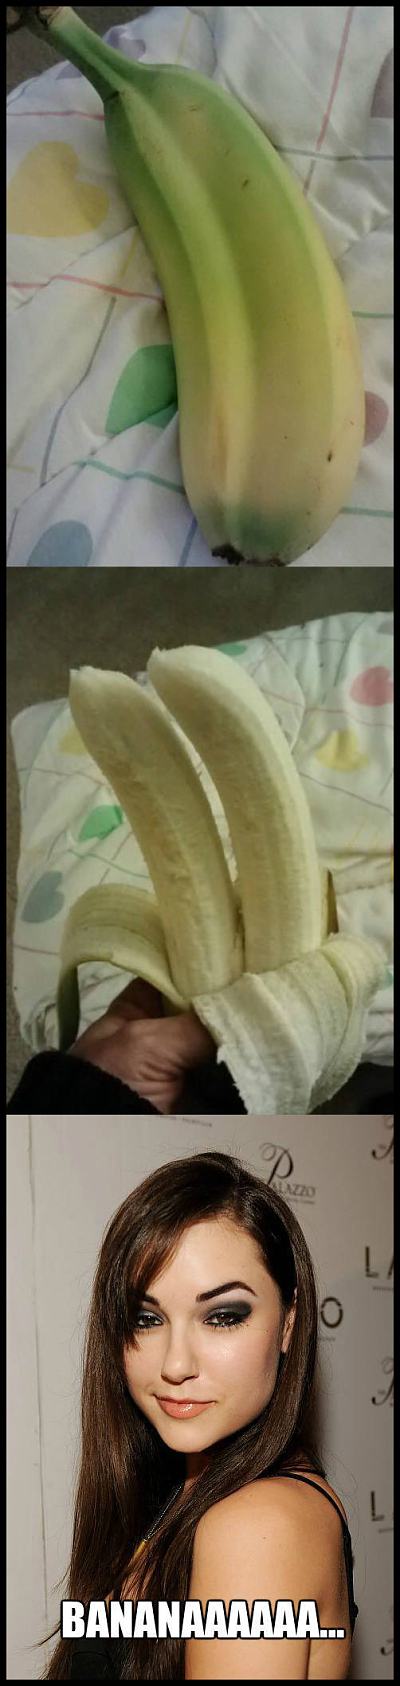 Obrázek bananaaaaaaaa